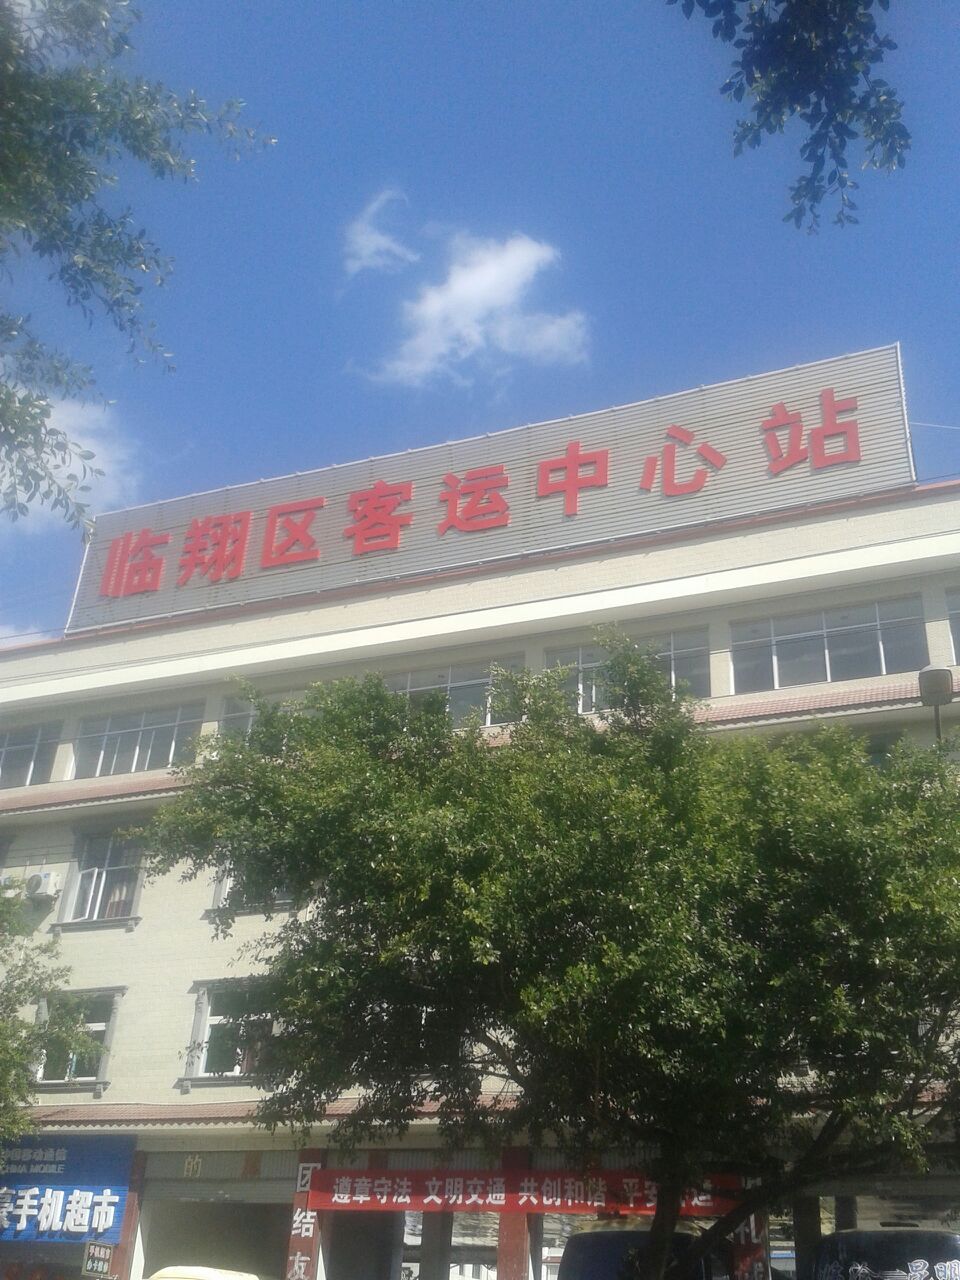 臨滄臨翔區客運中心站